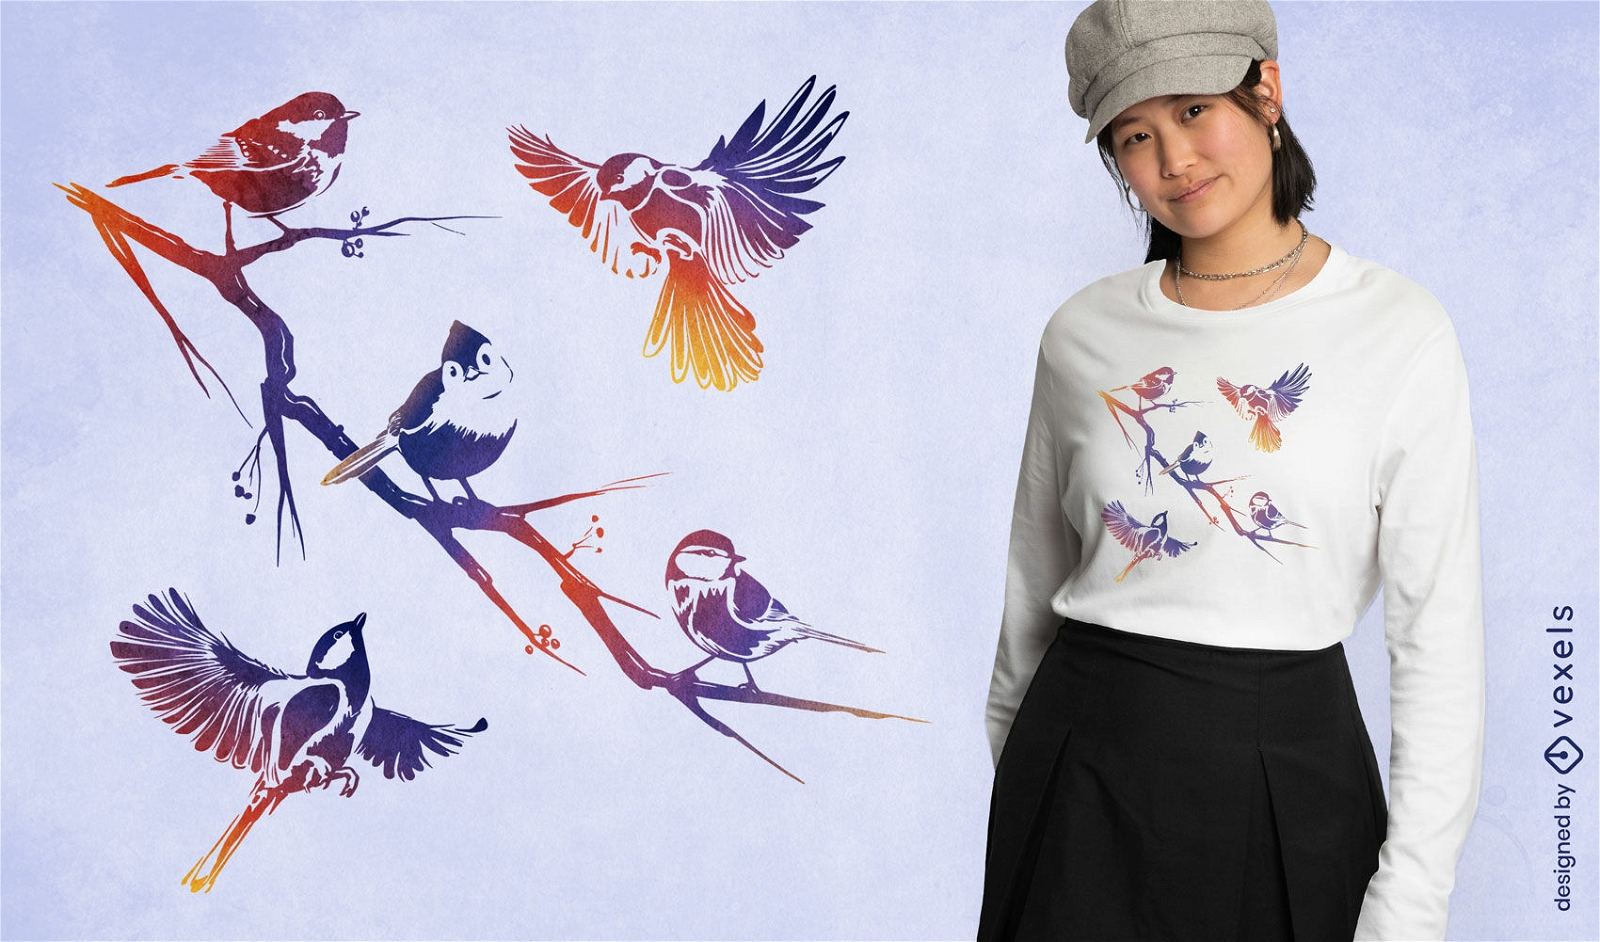 Verzweigen Sie sich mit Vögeln, die T-Shirt Design fliegen